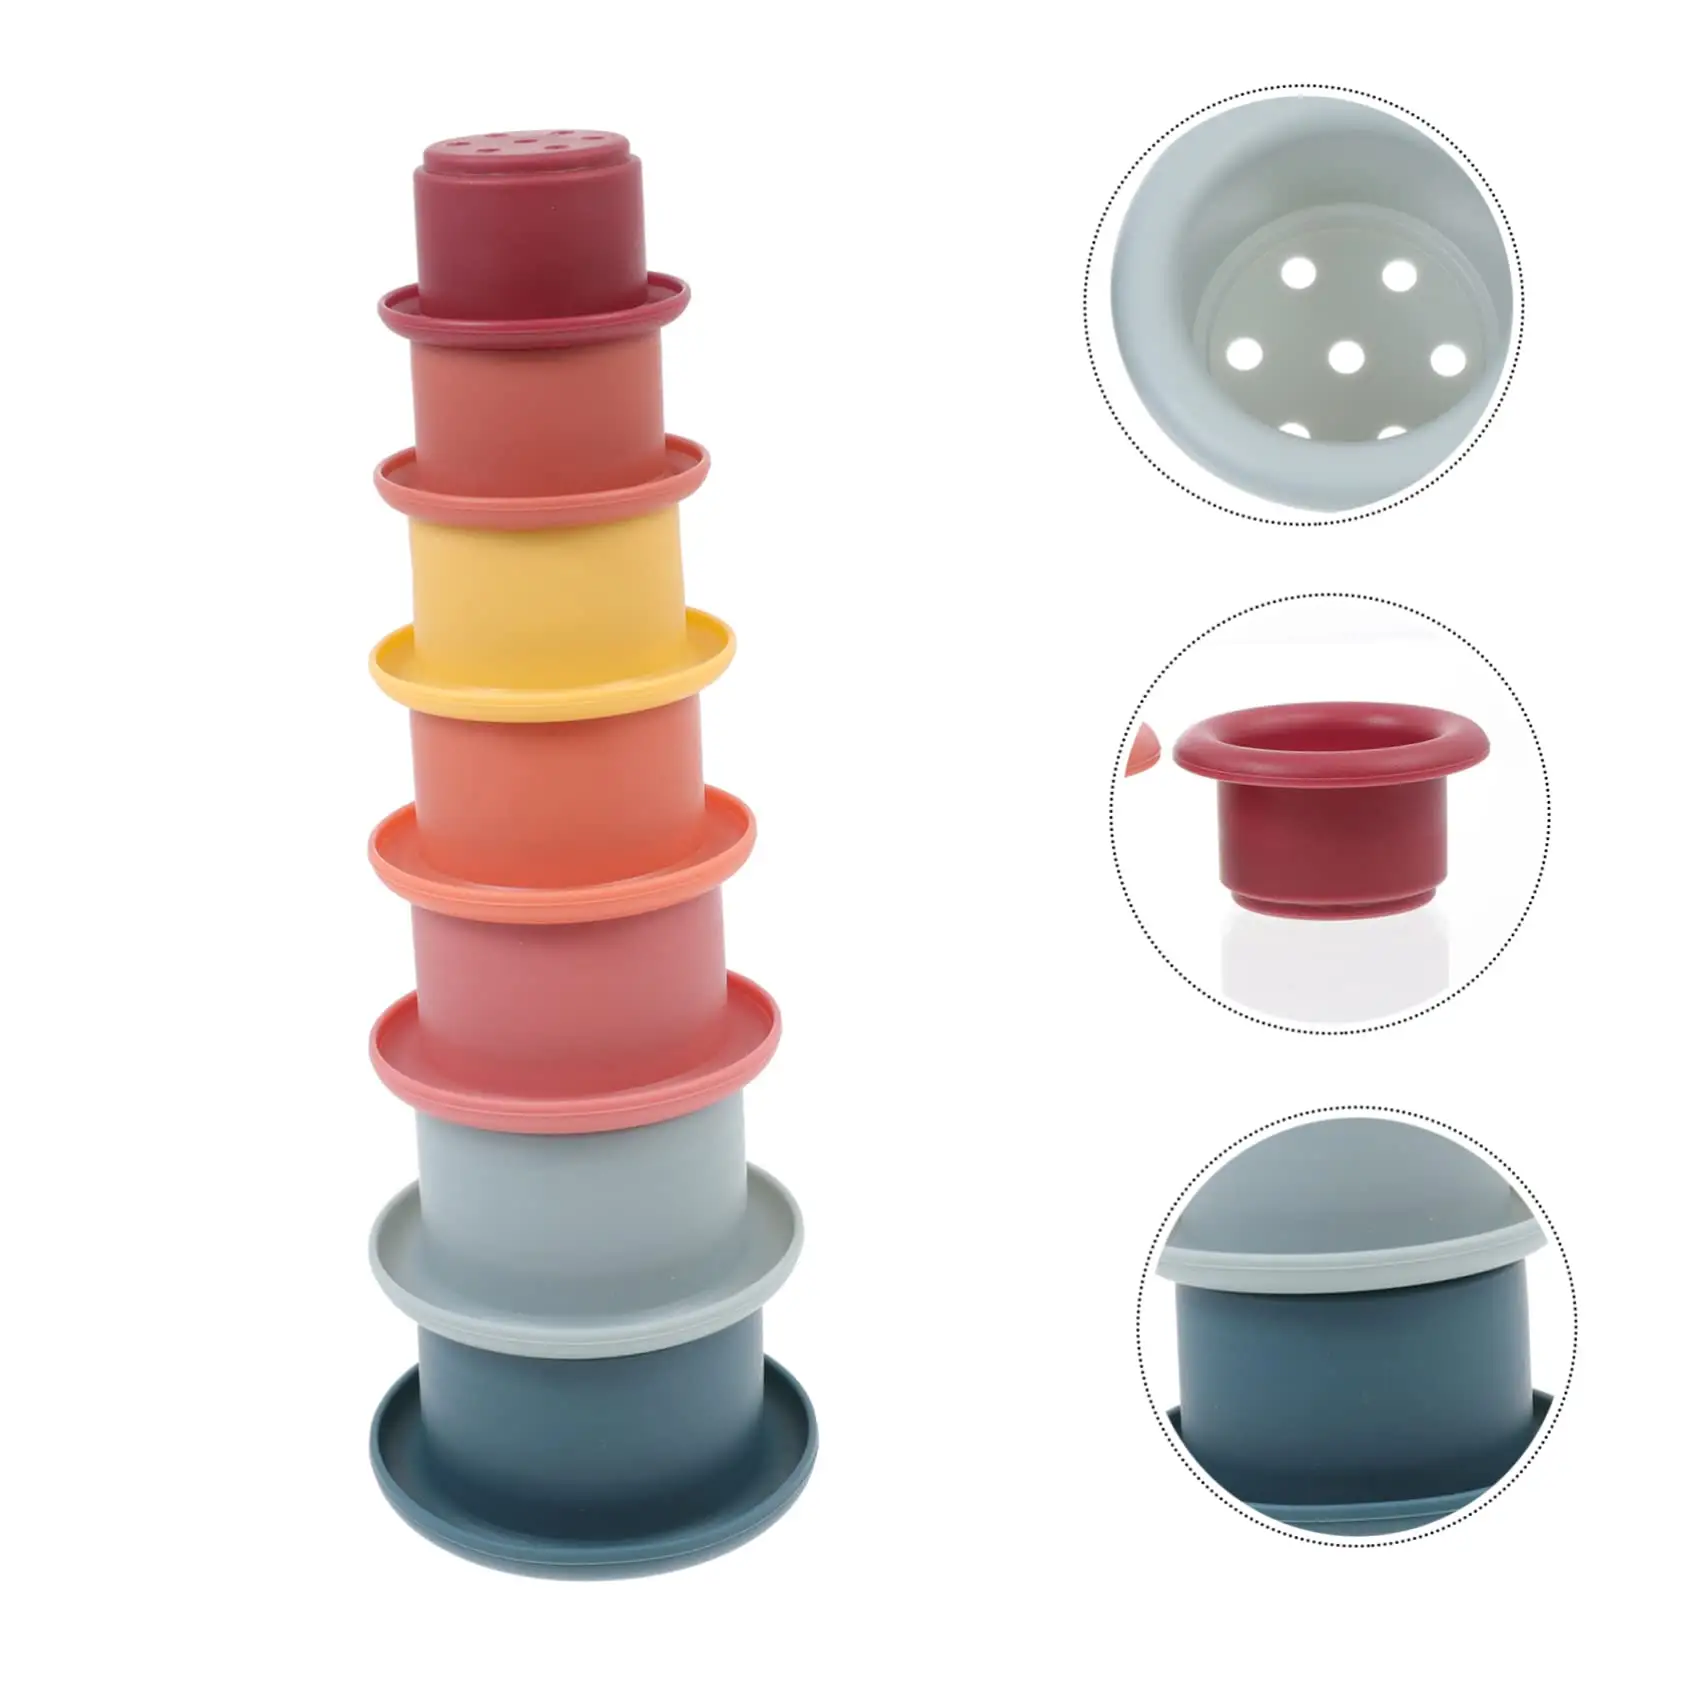 맞춤형 교육 BPA 무료 레인보우 링 7pcs 식품 학년 실리콘 유아 스태킹 빌딩 도구 블록 스태킹 컵 장난감